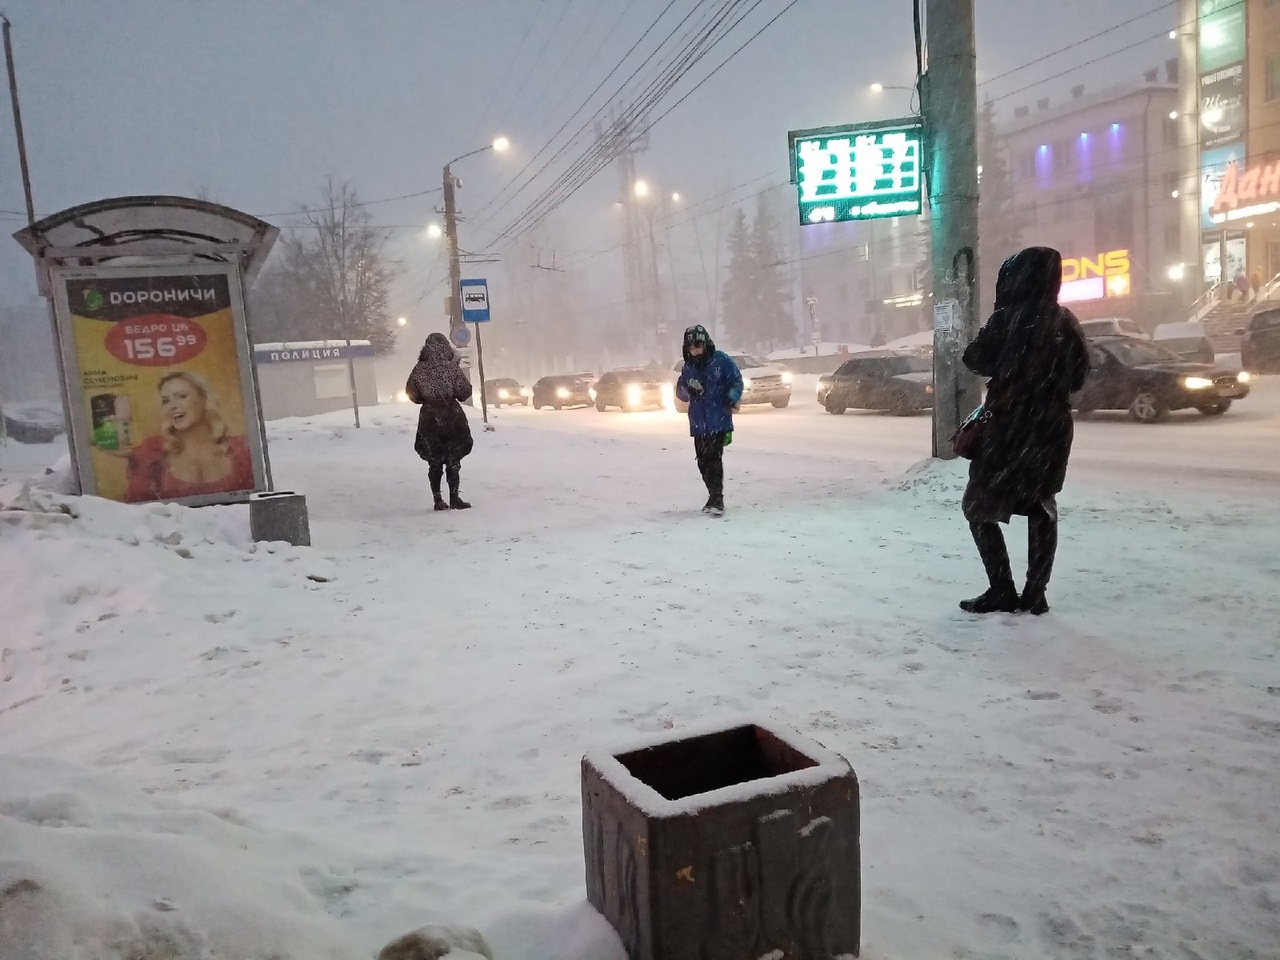 Метель, порывистый ветер и ледяной дождь: прогноз погоды на 13 декабря в Кирове